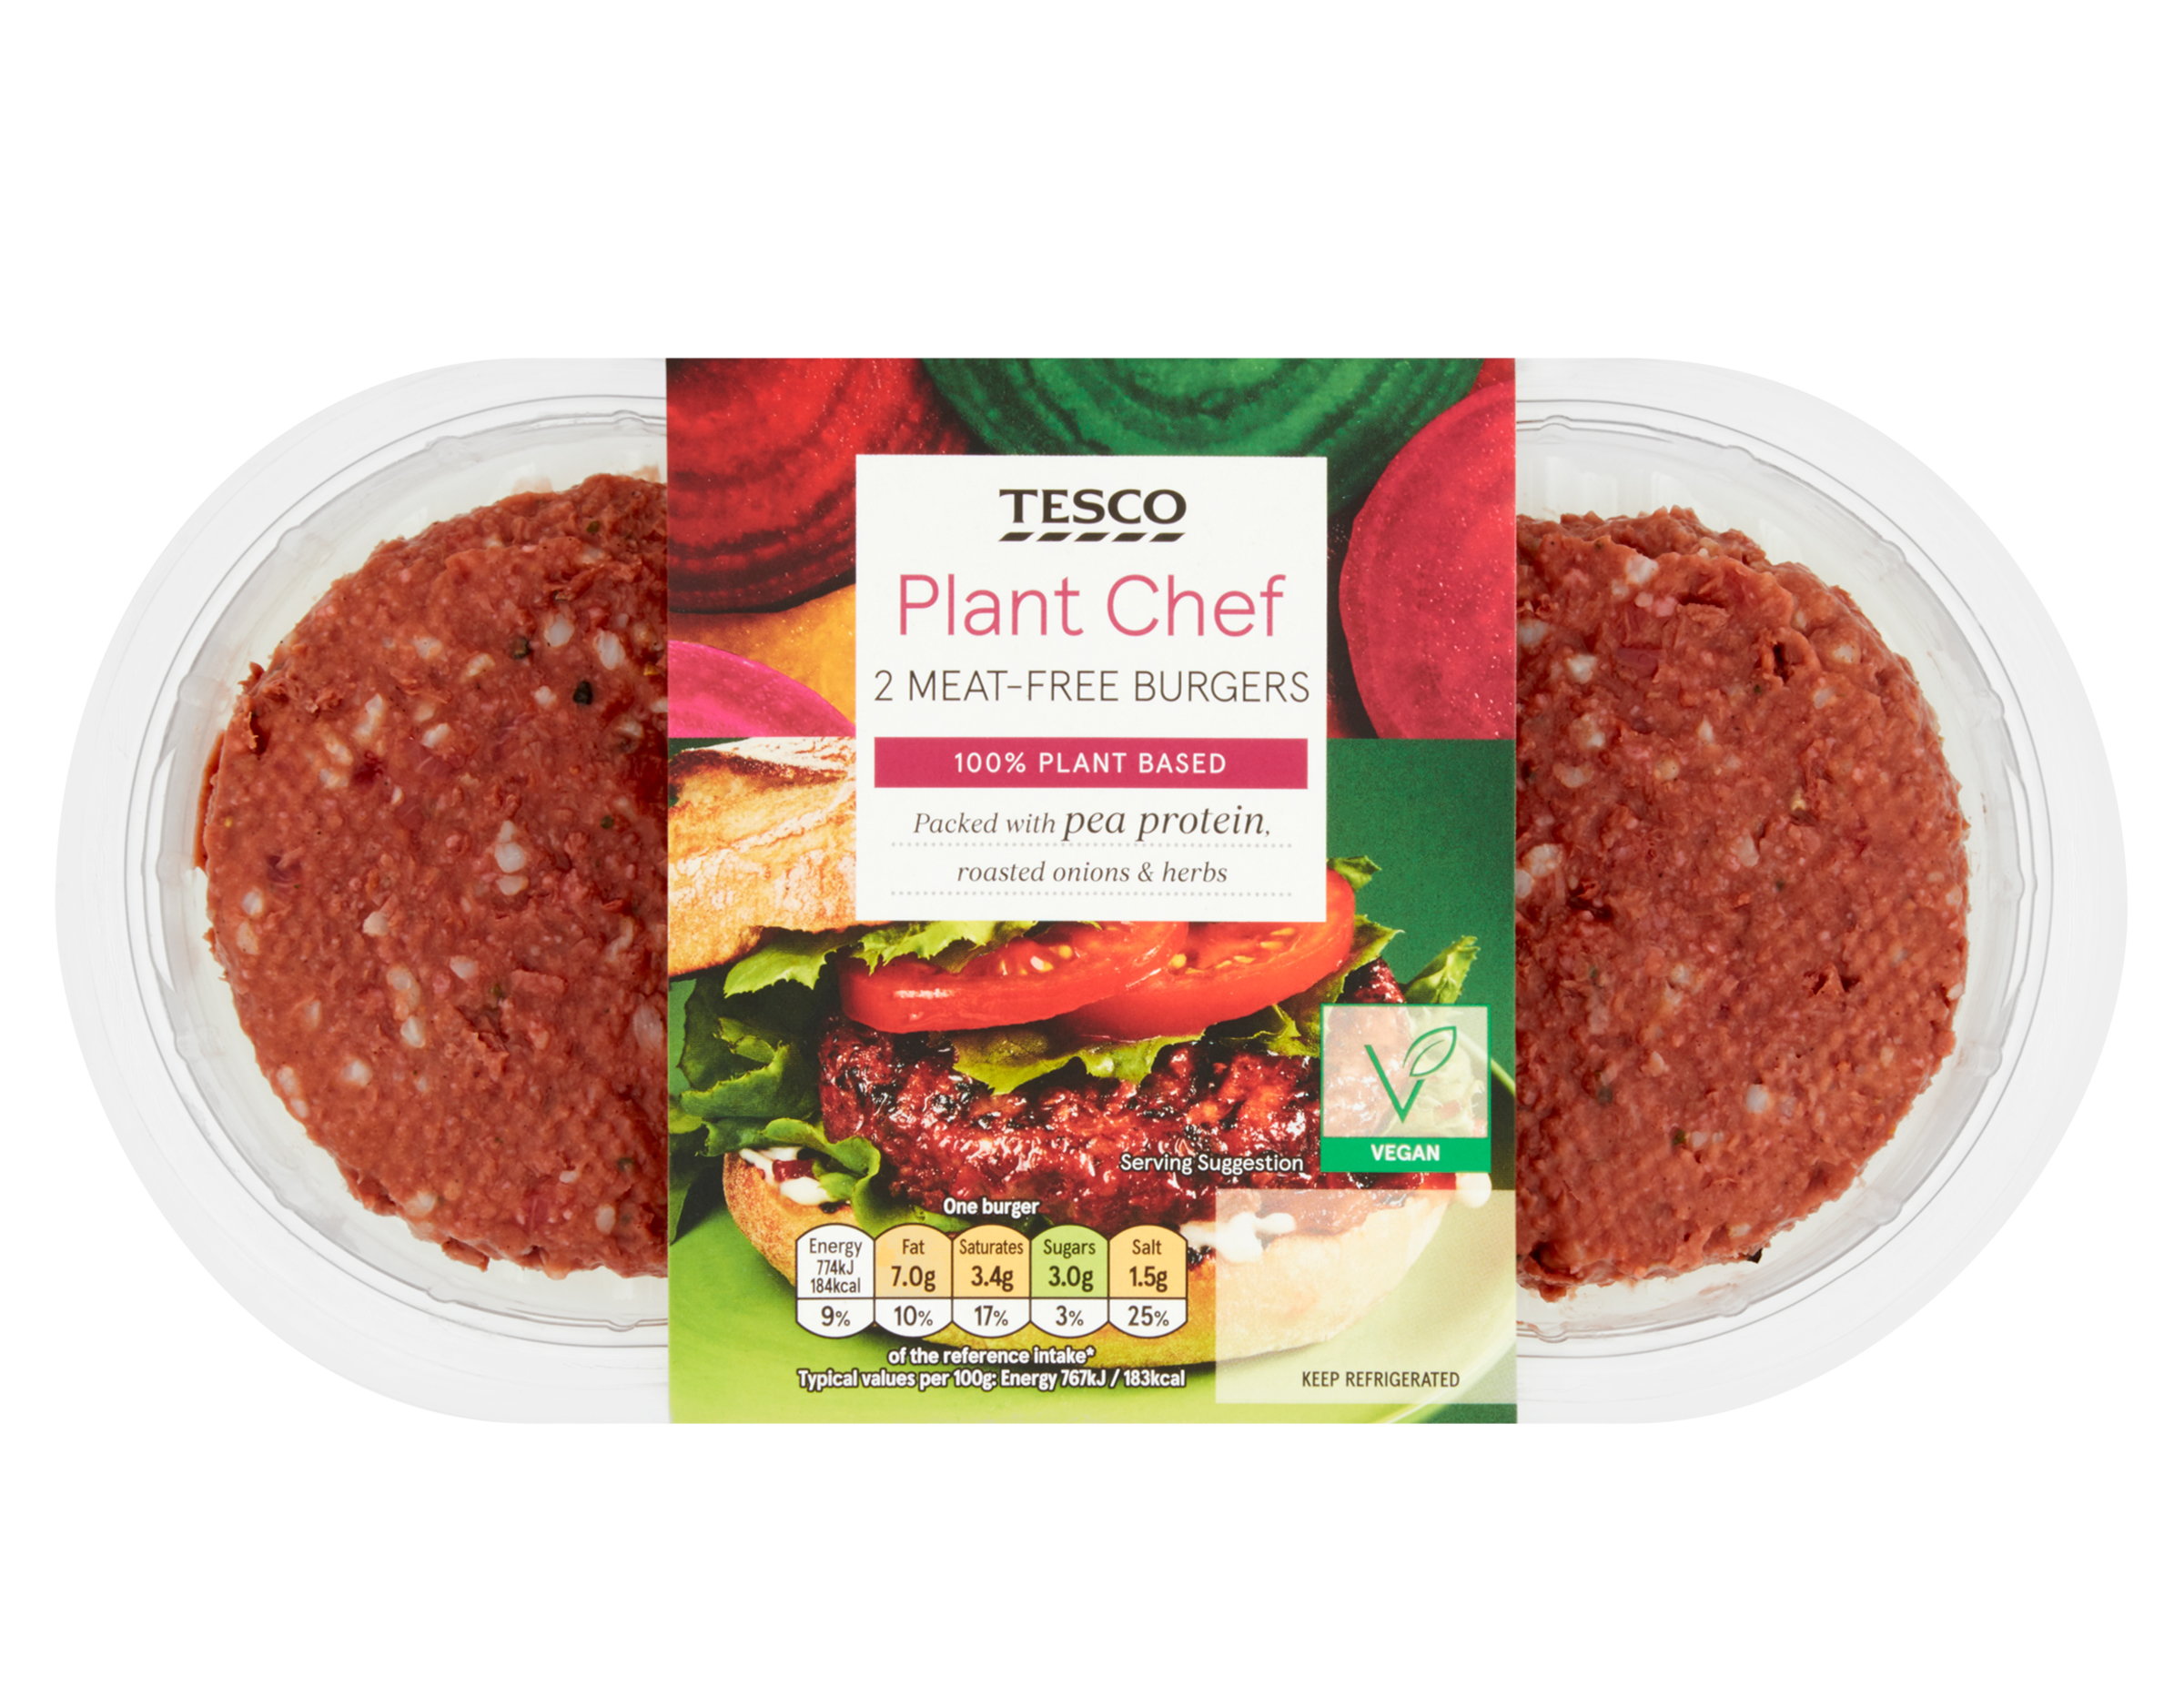 Tesco-Plant-Chef-2-Meat-Free-Burgers-57ad1abb-0908-4eb0-91a4-7adb9af1973f-0-2400x1853.jpg